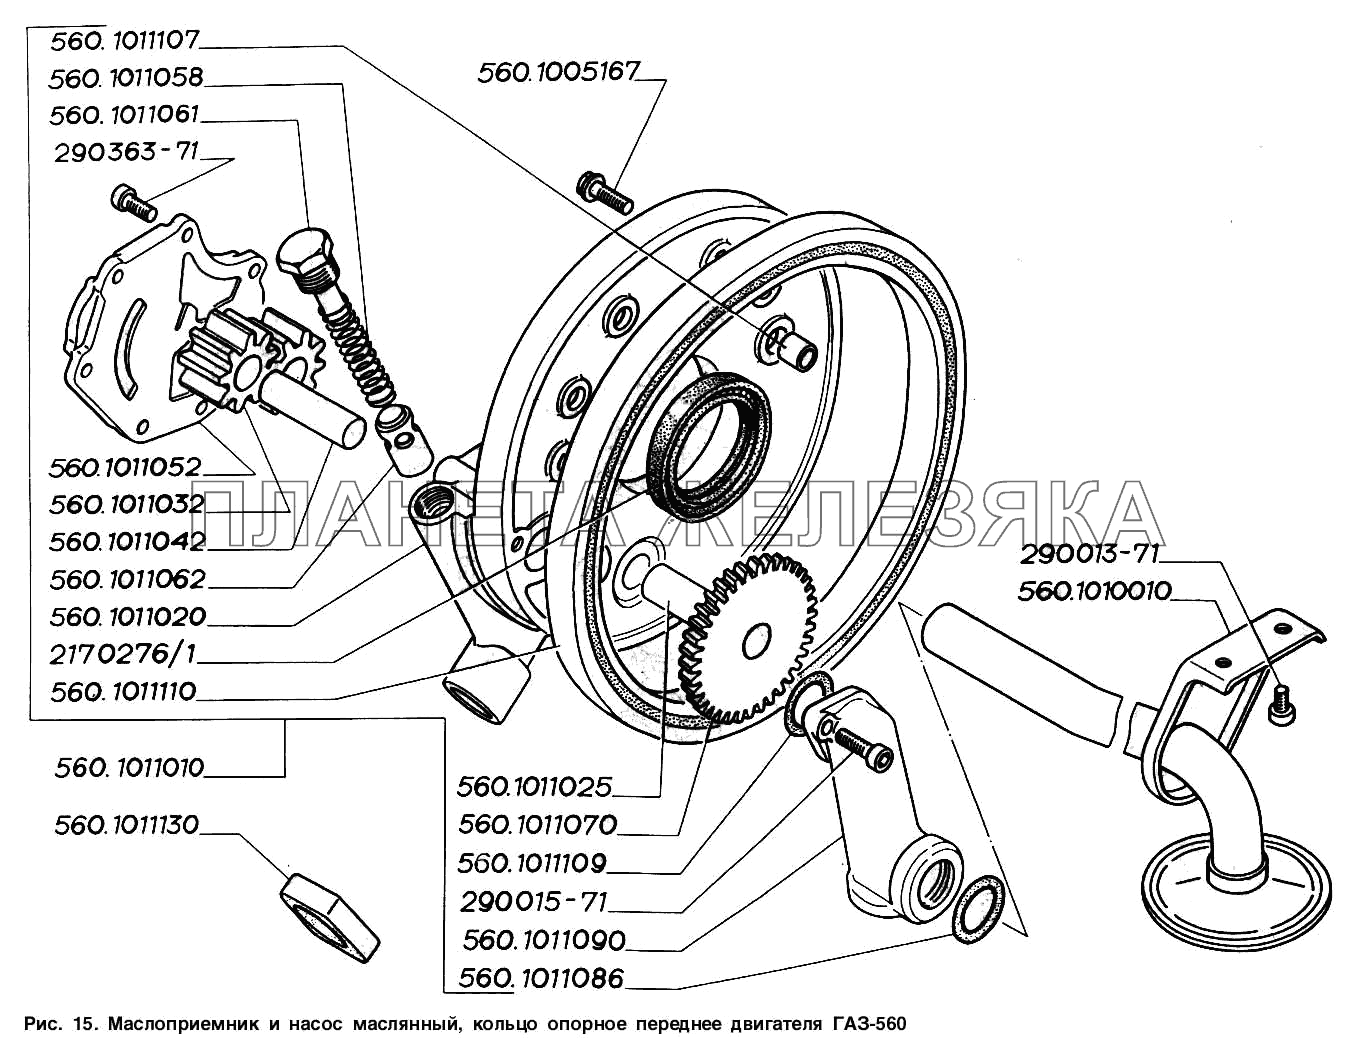 Маслоприемник и насос масляный, кольцо опорное переднее двигателя ГАЗ-560 ГАЗ-2217 (Соболь)